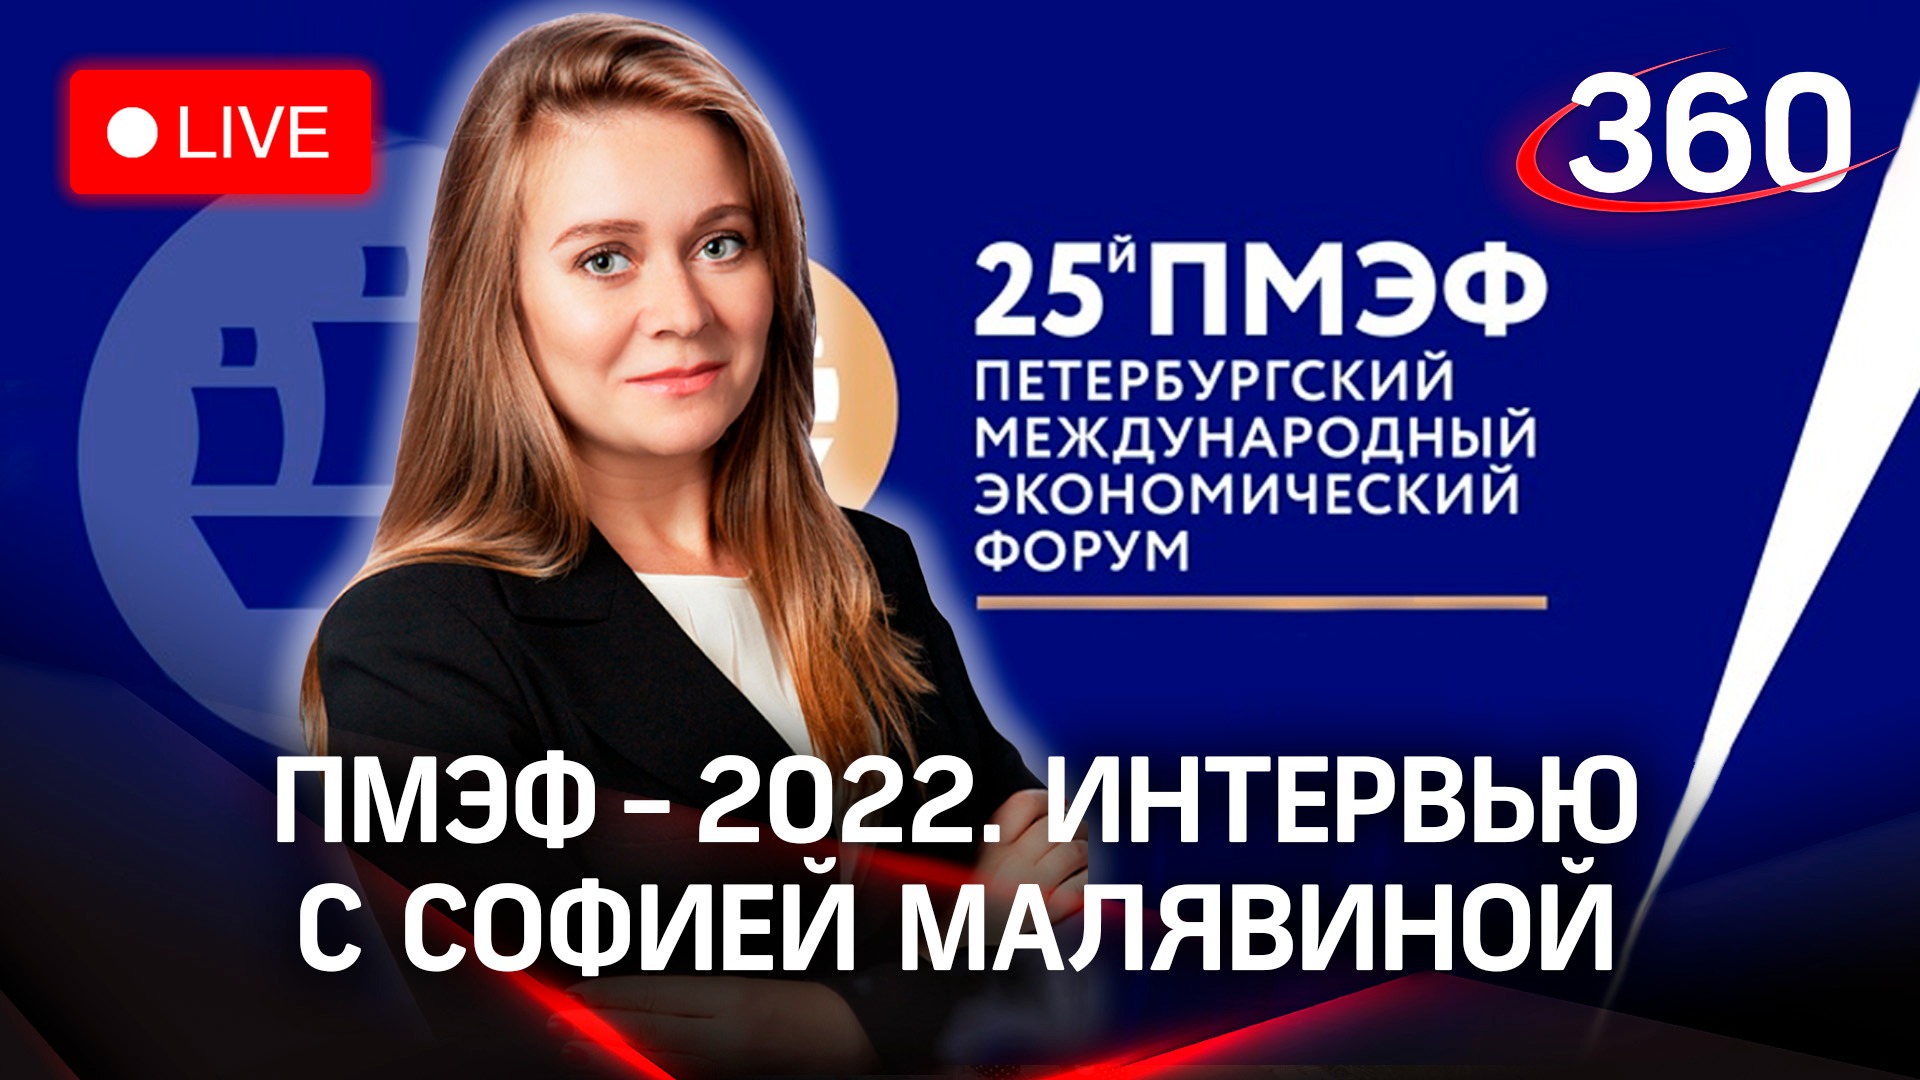 ПМЭФ-2022: интервью с Софией Малявиной, ген. директором АНО «Национальные приоритеты»